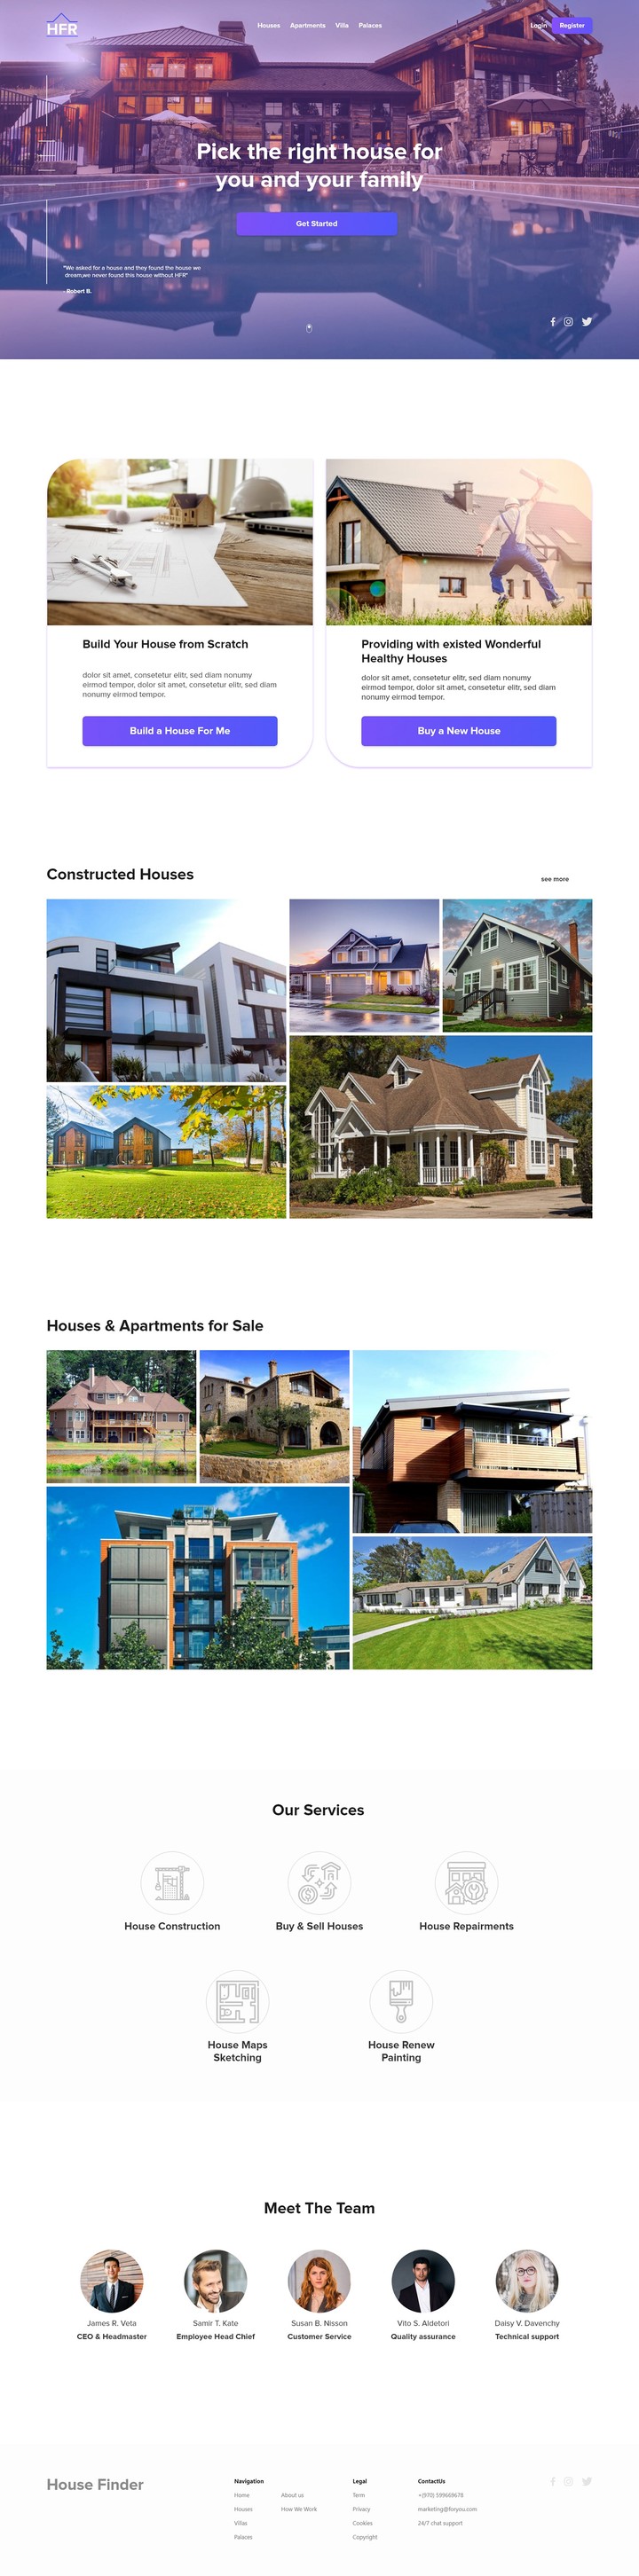 HF real estate webapp